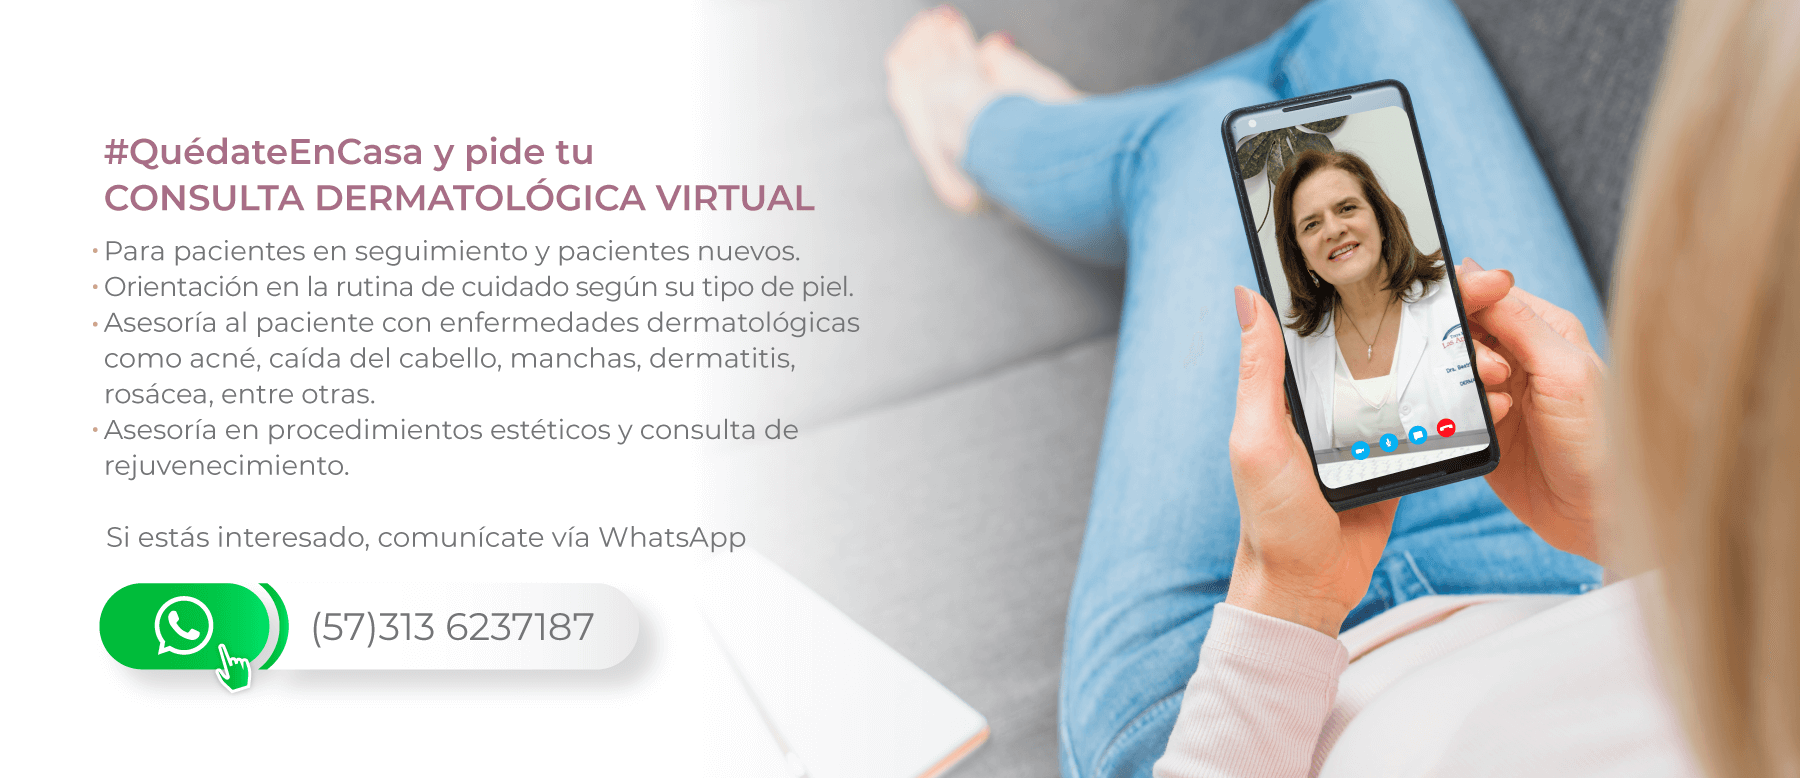 Consulta Dermatologica Online Virtual Dermatologa Medellin